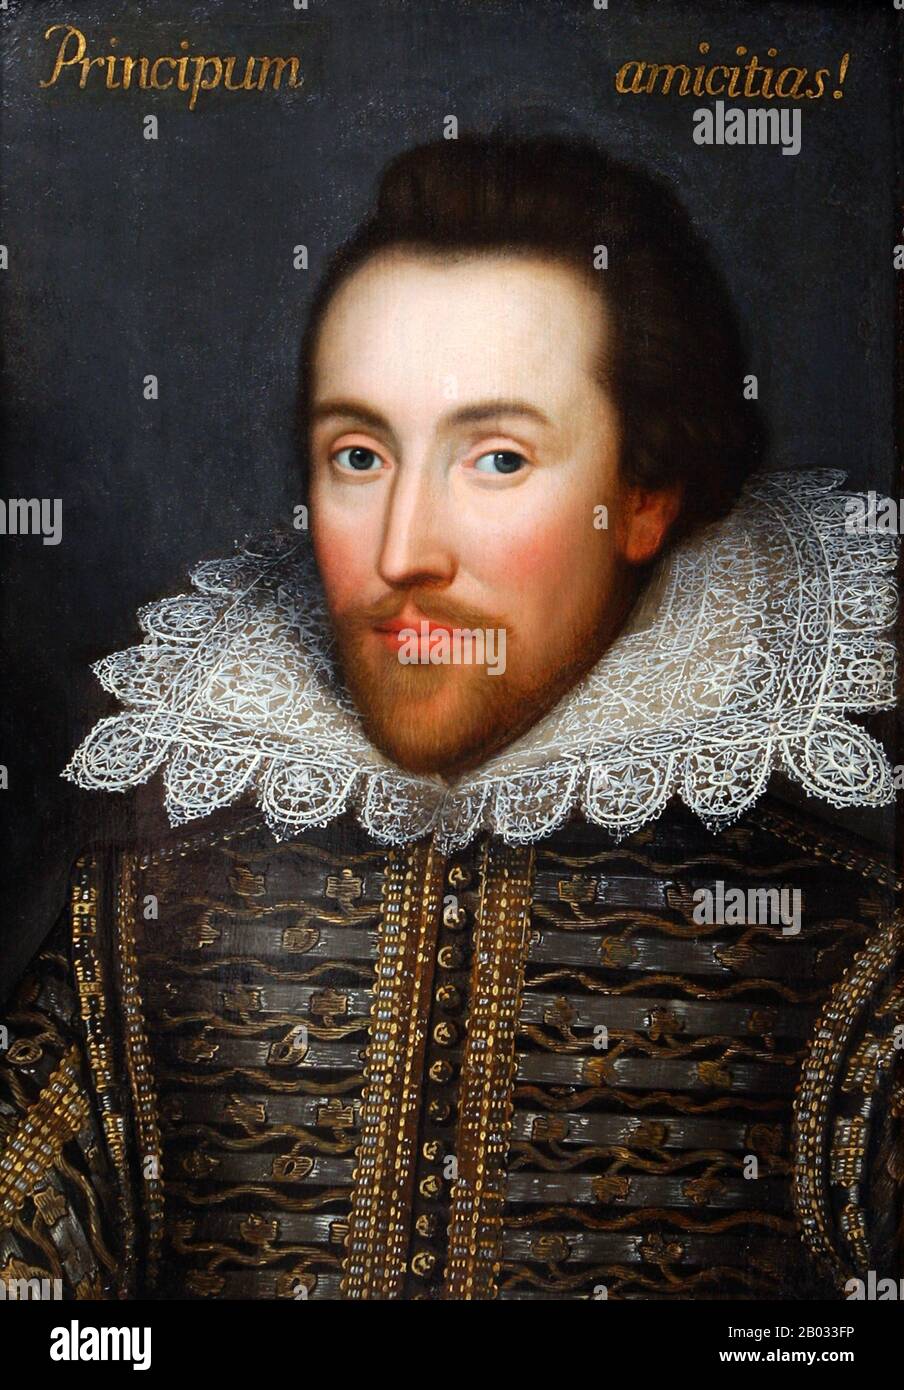 William Shakespeare (26. April 1564 - 23. April 1616) war ein englischer Dichter, Dramatiker und Schauspieler, der weithin als der größte Schriftsteller in der englischen Sprache und der vornehmste Dramatiker der Welt gilt. Seine extanten Werke, darunter Kollaborationen, bestehen aus etwa 38 Theaterstücken, 154 Sonetten, zwei langen erzählenden Gedichten und einigen anderen Versen, teilweise aus unsicherer Autorschaft. Seine Stücke wurden in jede große lebende Sprache übersetzt und werden häufiger aufgeführt als die eines anderen Dramatikers. Das Cobbe Portrait ist ein frühes jakobinisches Tafelbild eines Herrn, das als a argumentiert wurde Stockfoto